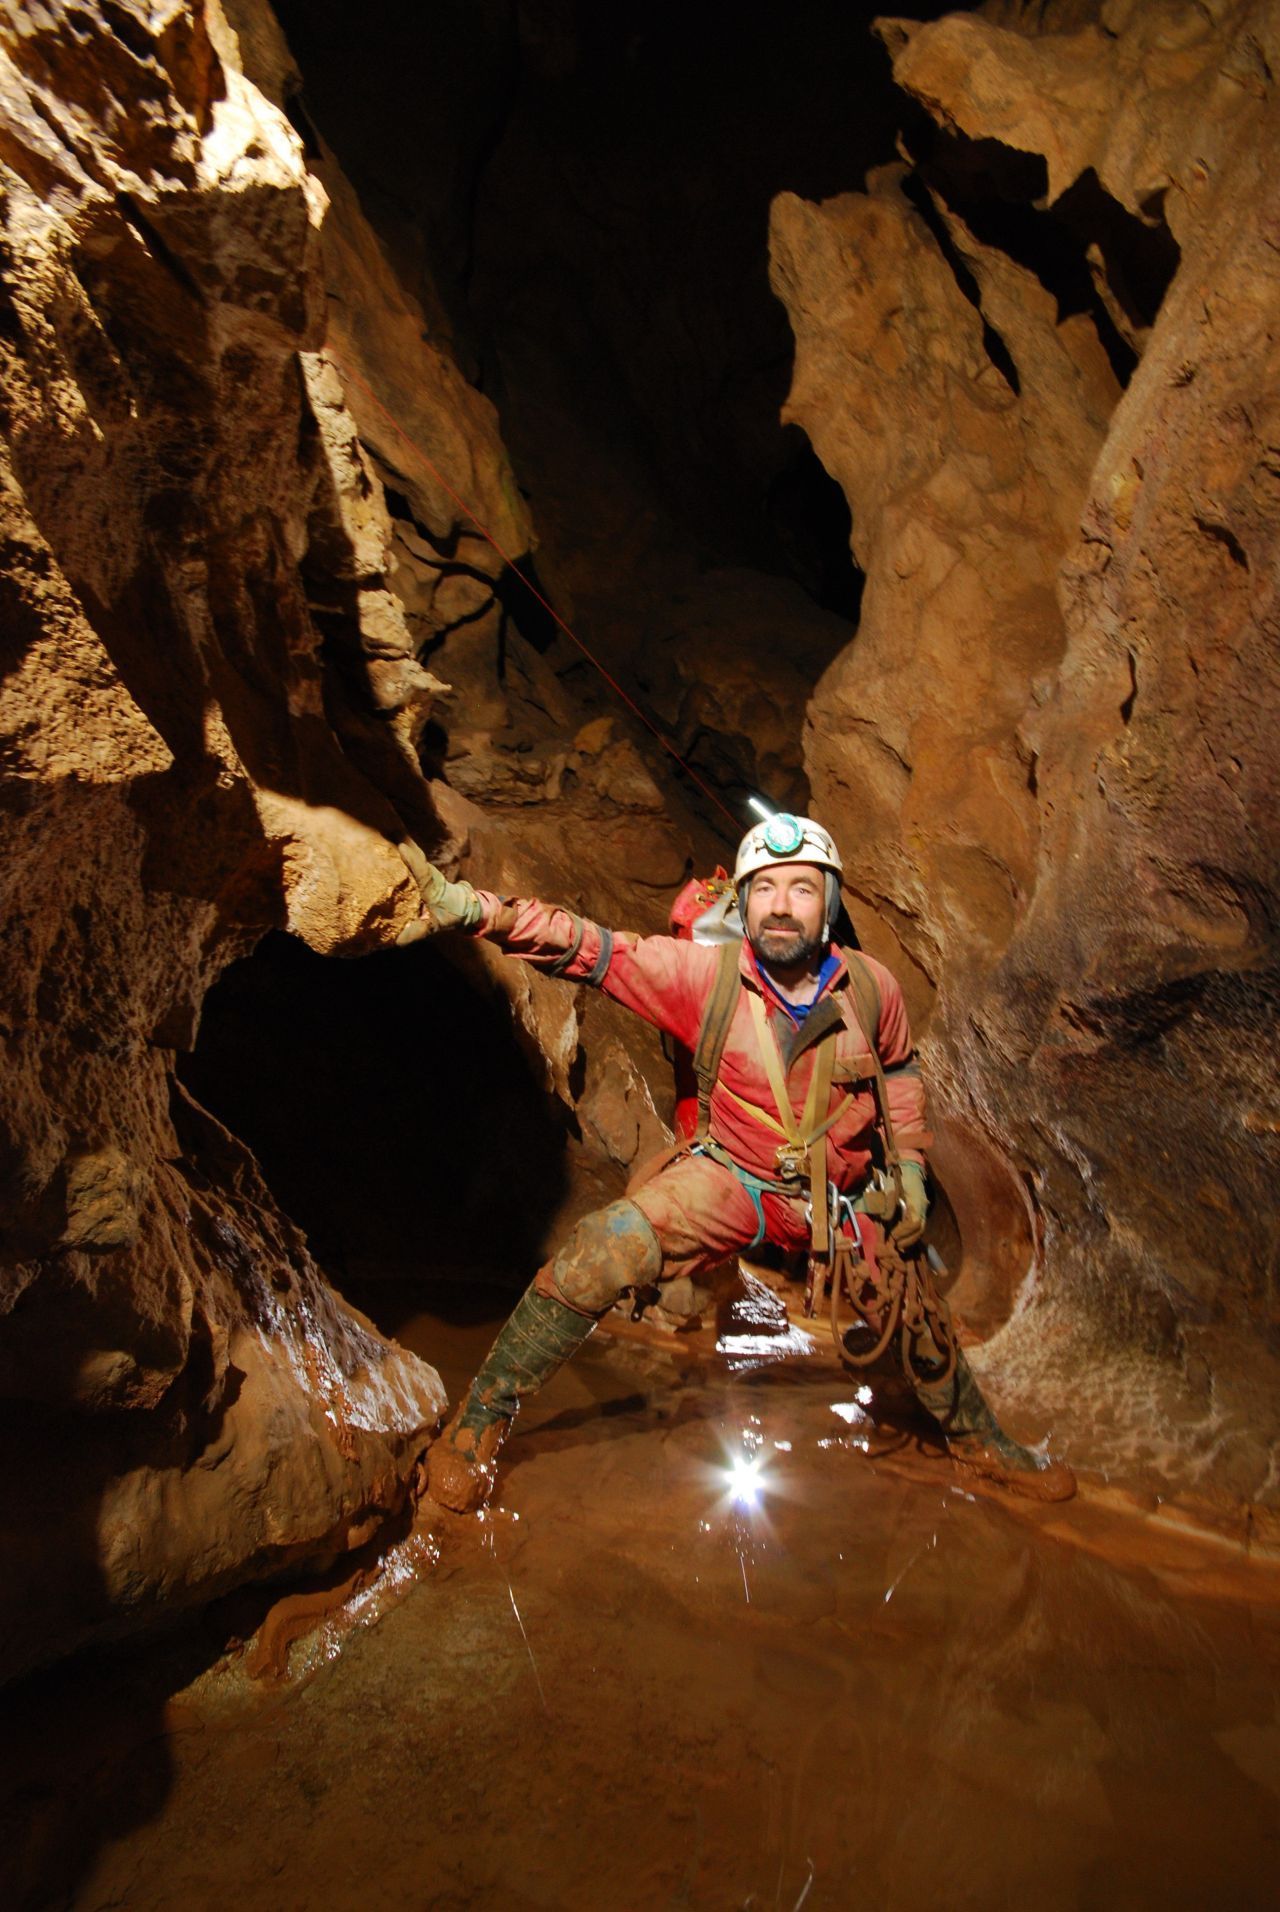 In den Berchtesgadener Alpen entdeckten Forschende 1996 ein "Riesending". Deswegen bekam die Karsthöhle im Untersberg den Namen "Riesending-Höhle". Vom Eingang aus führen mehrere Schächte Hunderte Meter senkrecht nach unten. Es gibt Canyons, Wasserfälle und einen 30 Meter langen See, den man nur im Schlauchboot überwinden kann. 2014 erlitt der Forscher Johann Westhauser hier in rund 950 Metern Tiefe durch einen Steinschlag ei